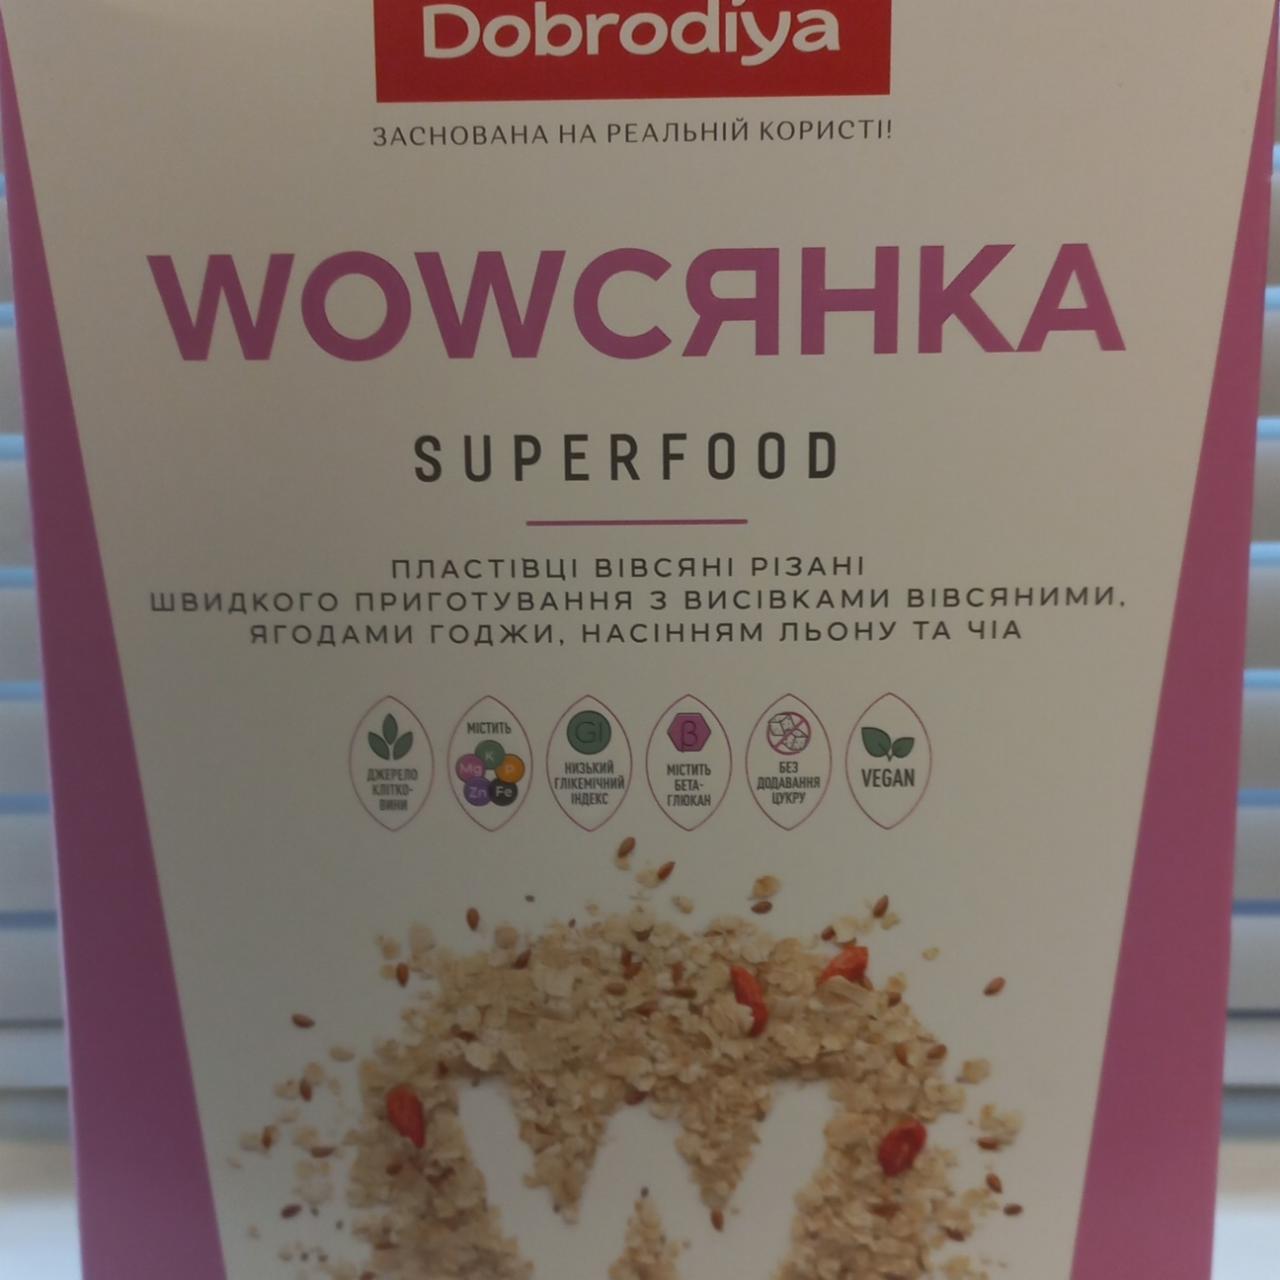 Фото - Wowсянка superfood пластівці вівсяні різані Dobrodiya